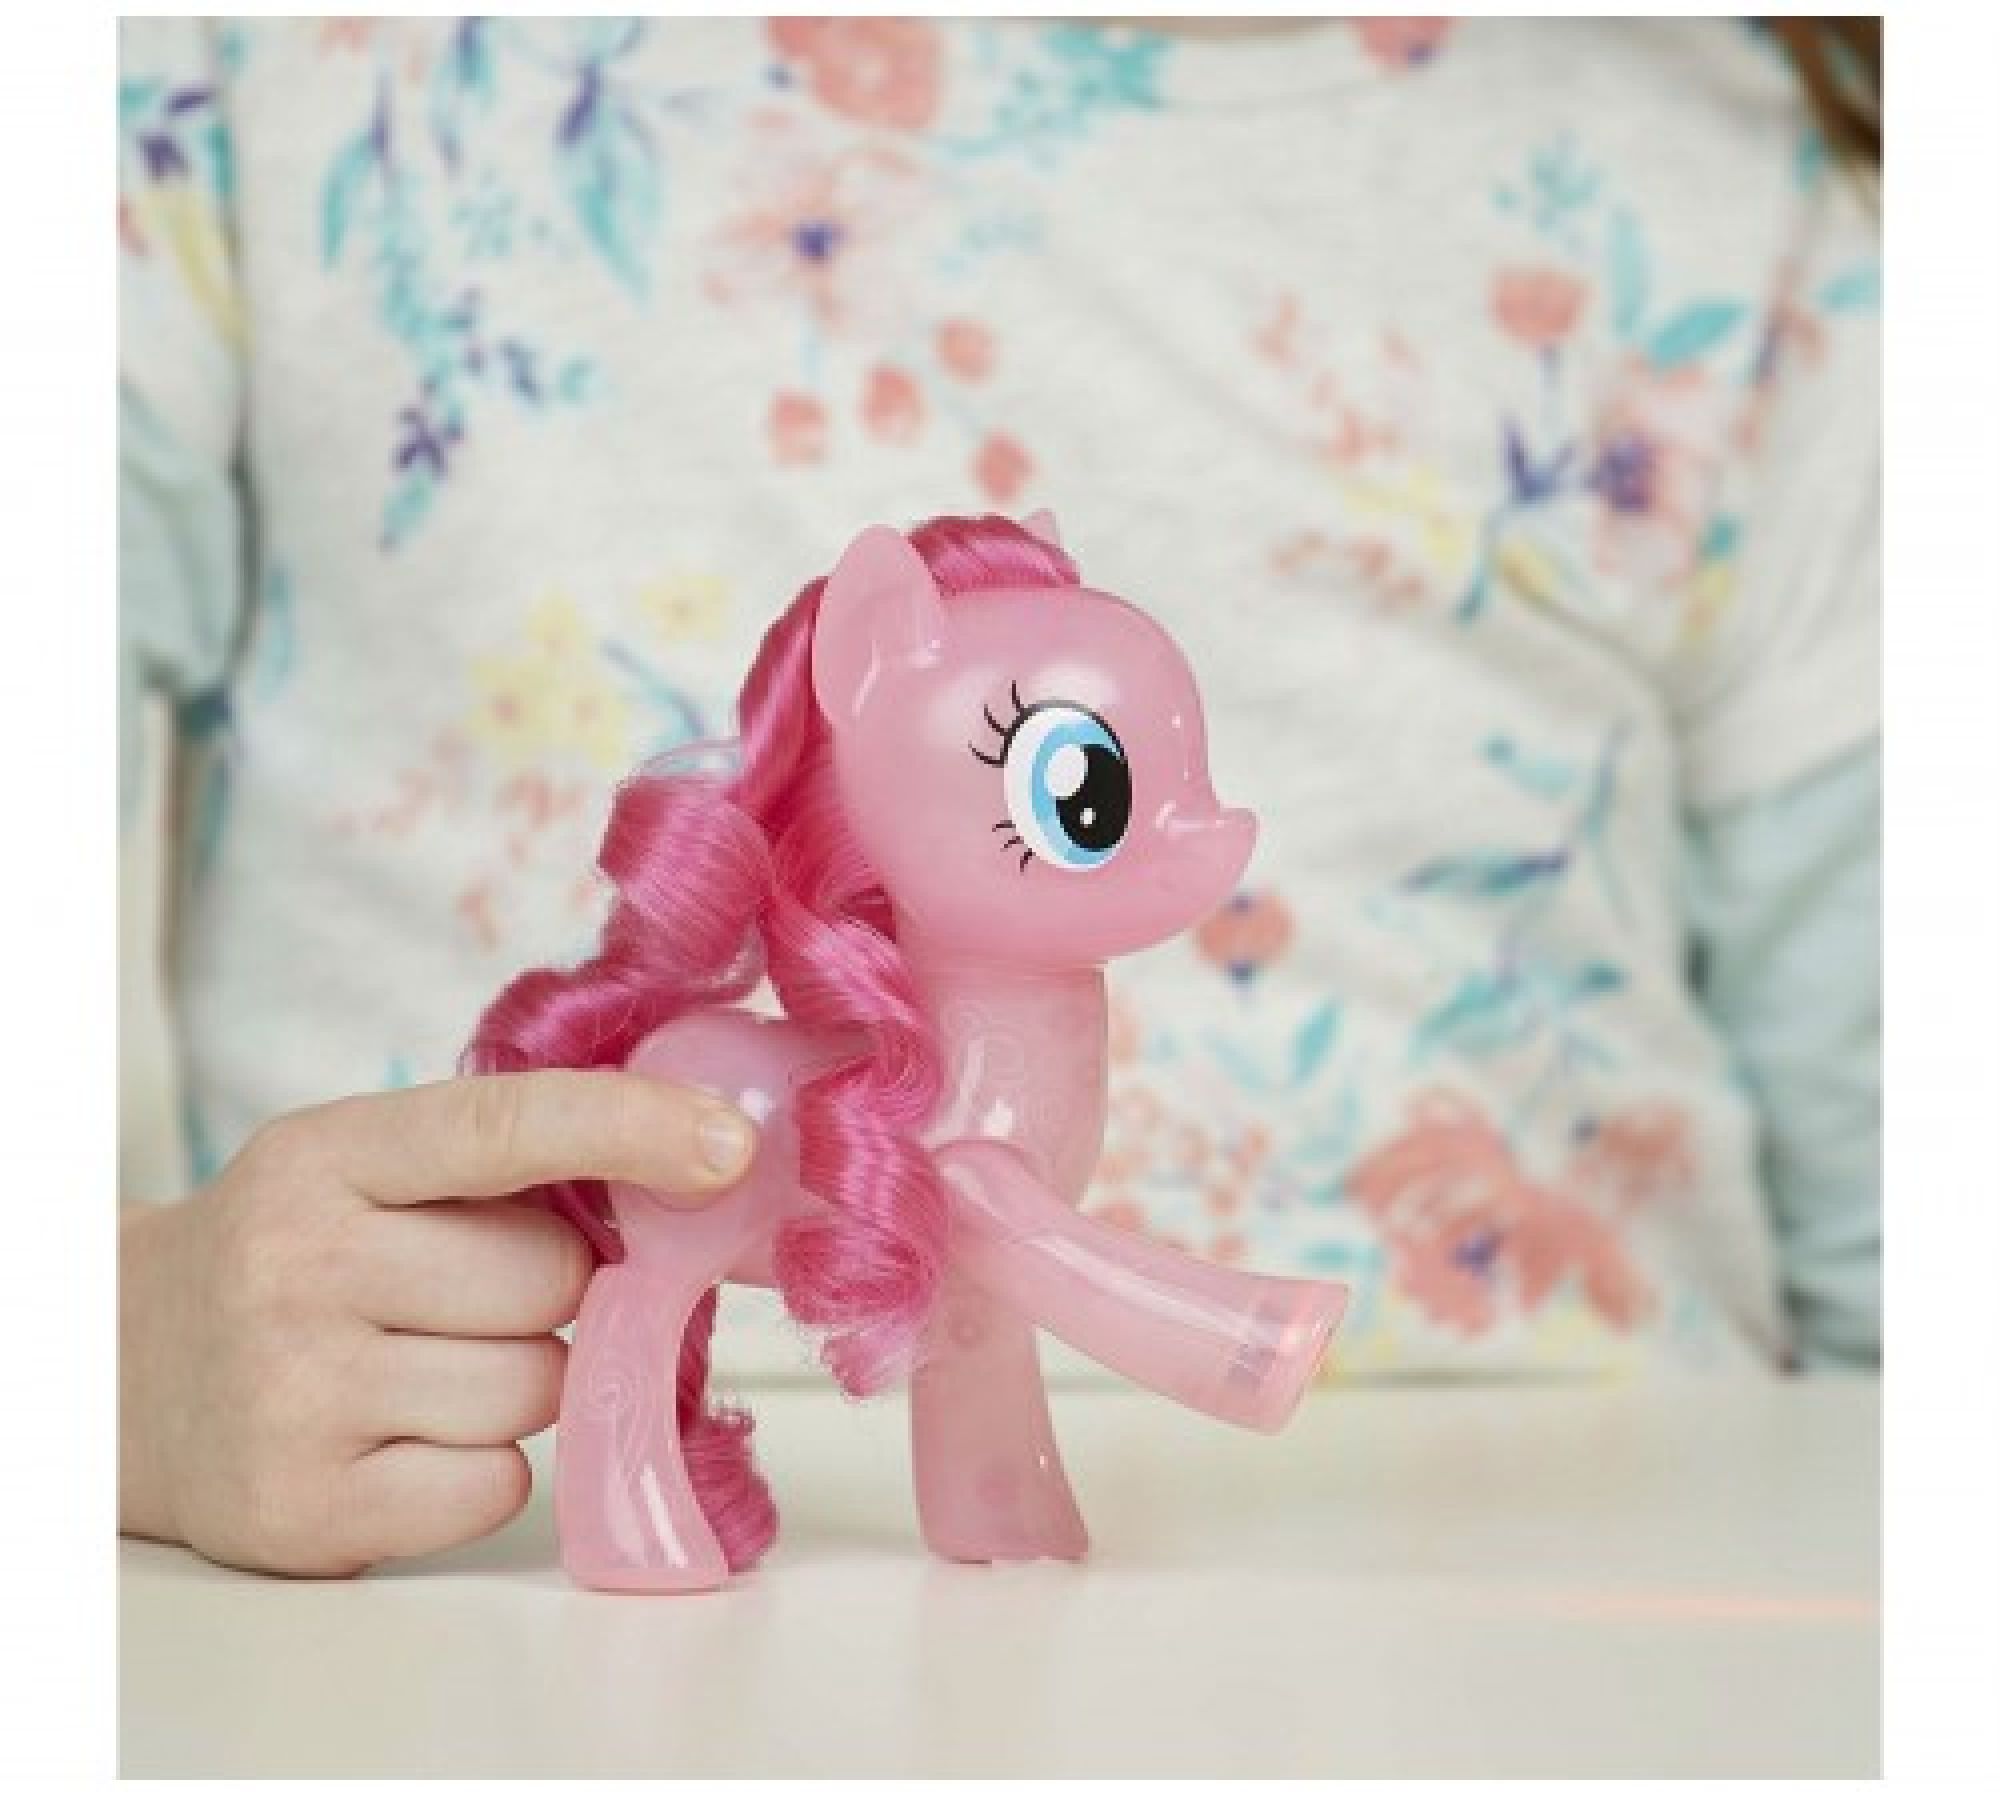 Pony day. Пони c0720 my little Pony "сияние" магия дружбы Hasbro. Пинки Пай интерактивная игрушка Хасбро. Игровой набор my little Pony my little Pony. Малютка пони Пинки Пай (29208). My little Pony (Hasbro) MLP "мерцание" интерактивная Пинки Пай c0677.